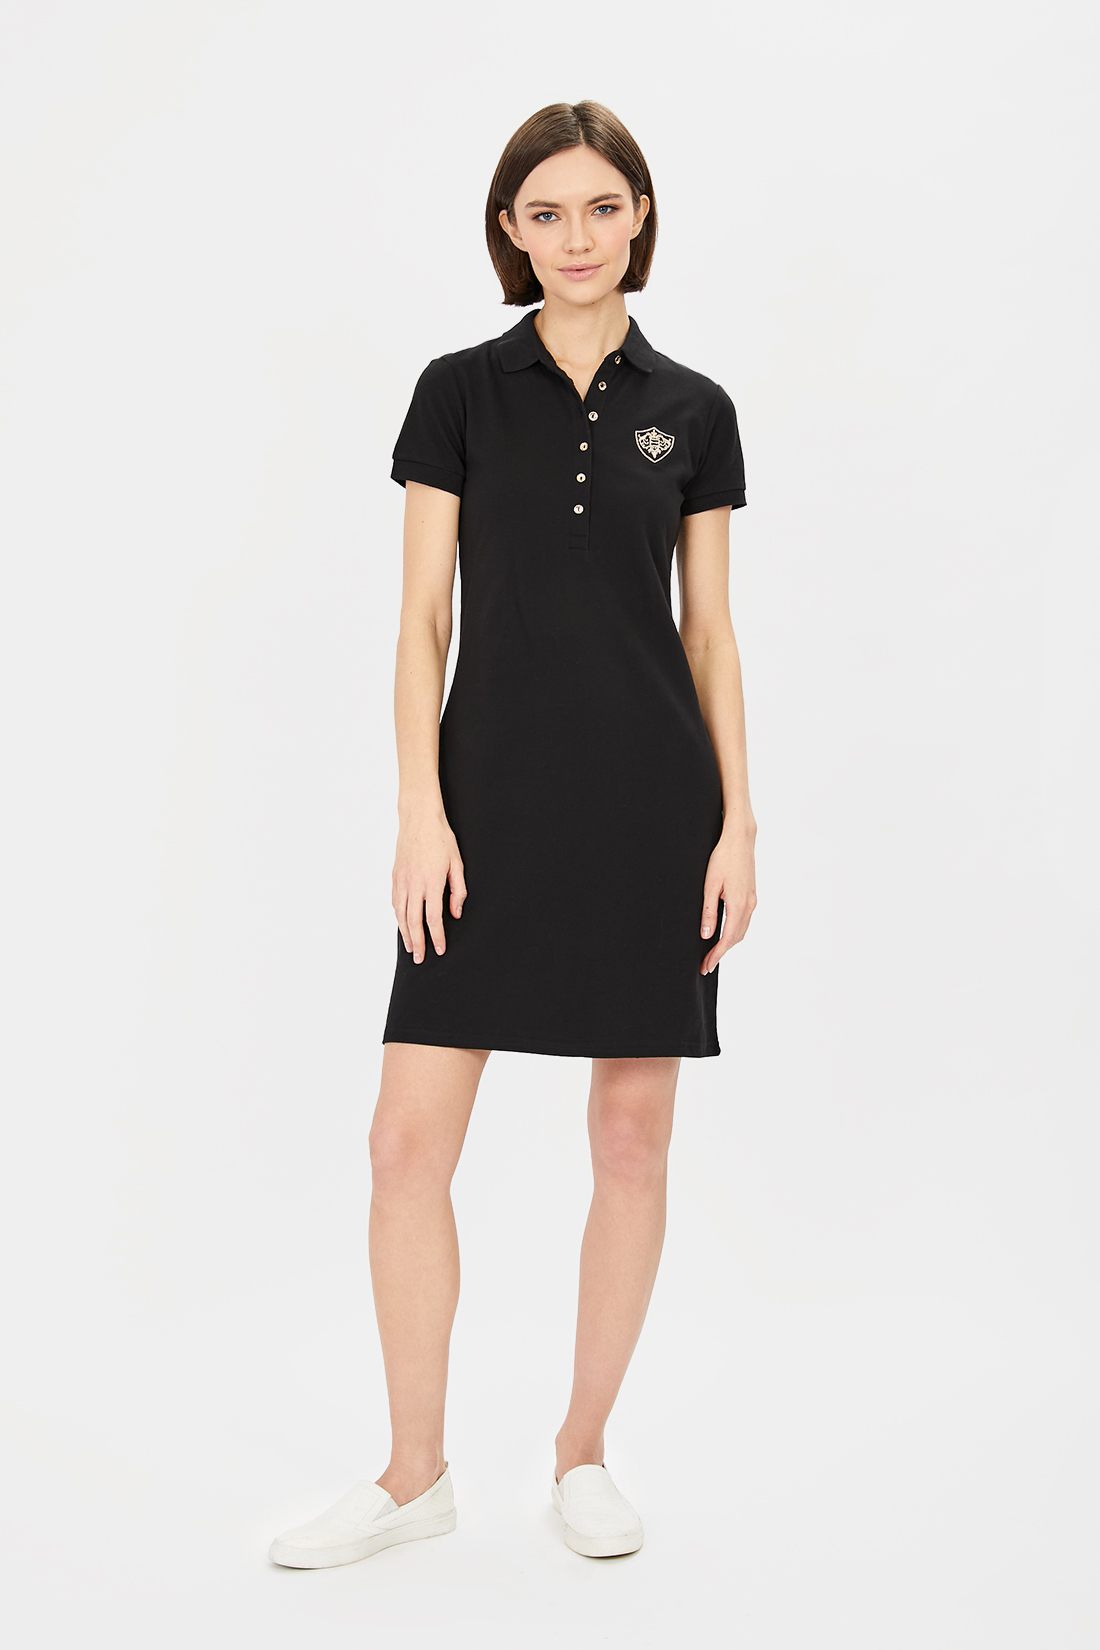 фото Платье-футболка женское baon b451201 черное m